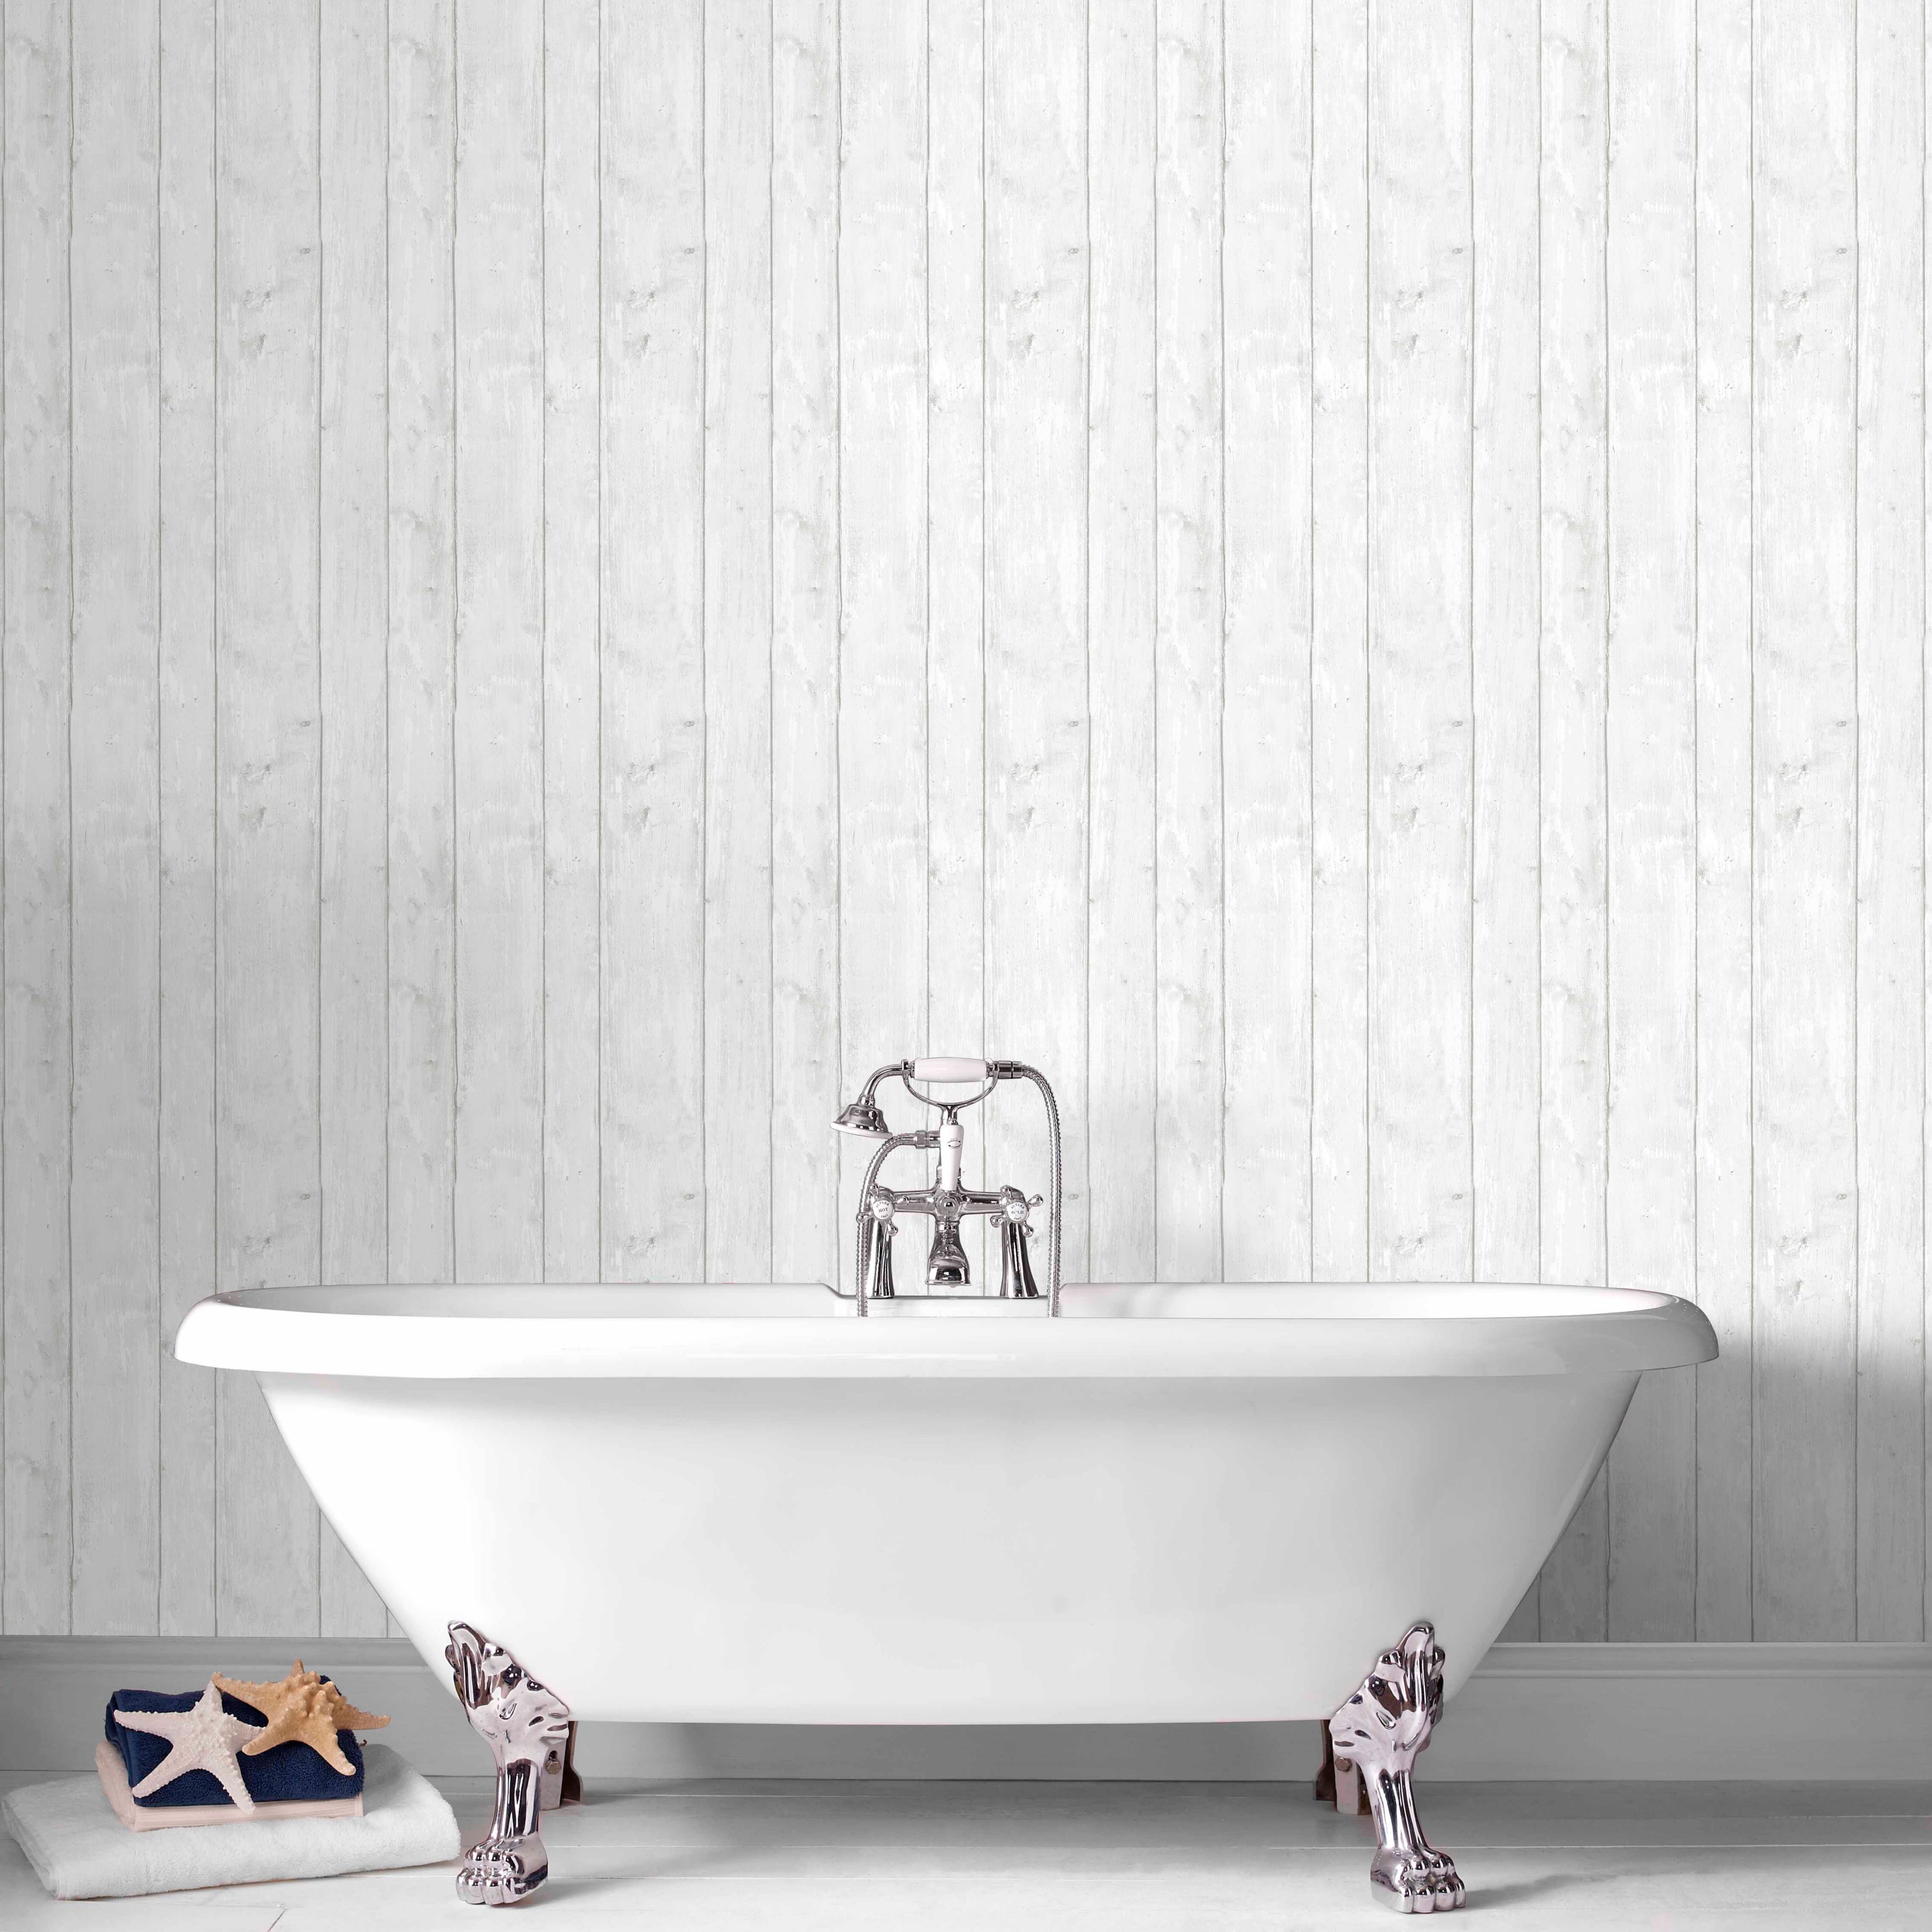 Bathroom Wallpaper Tile Effect Image Mag